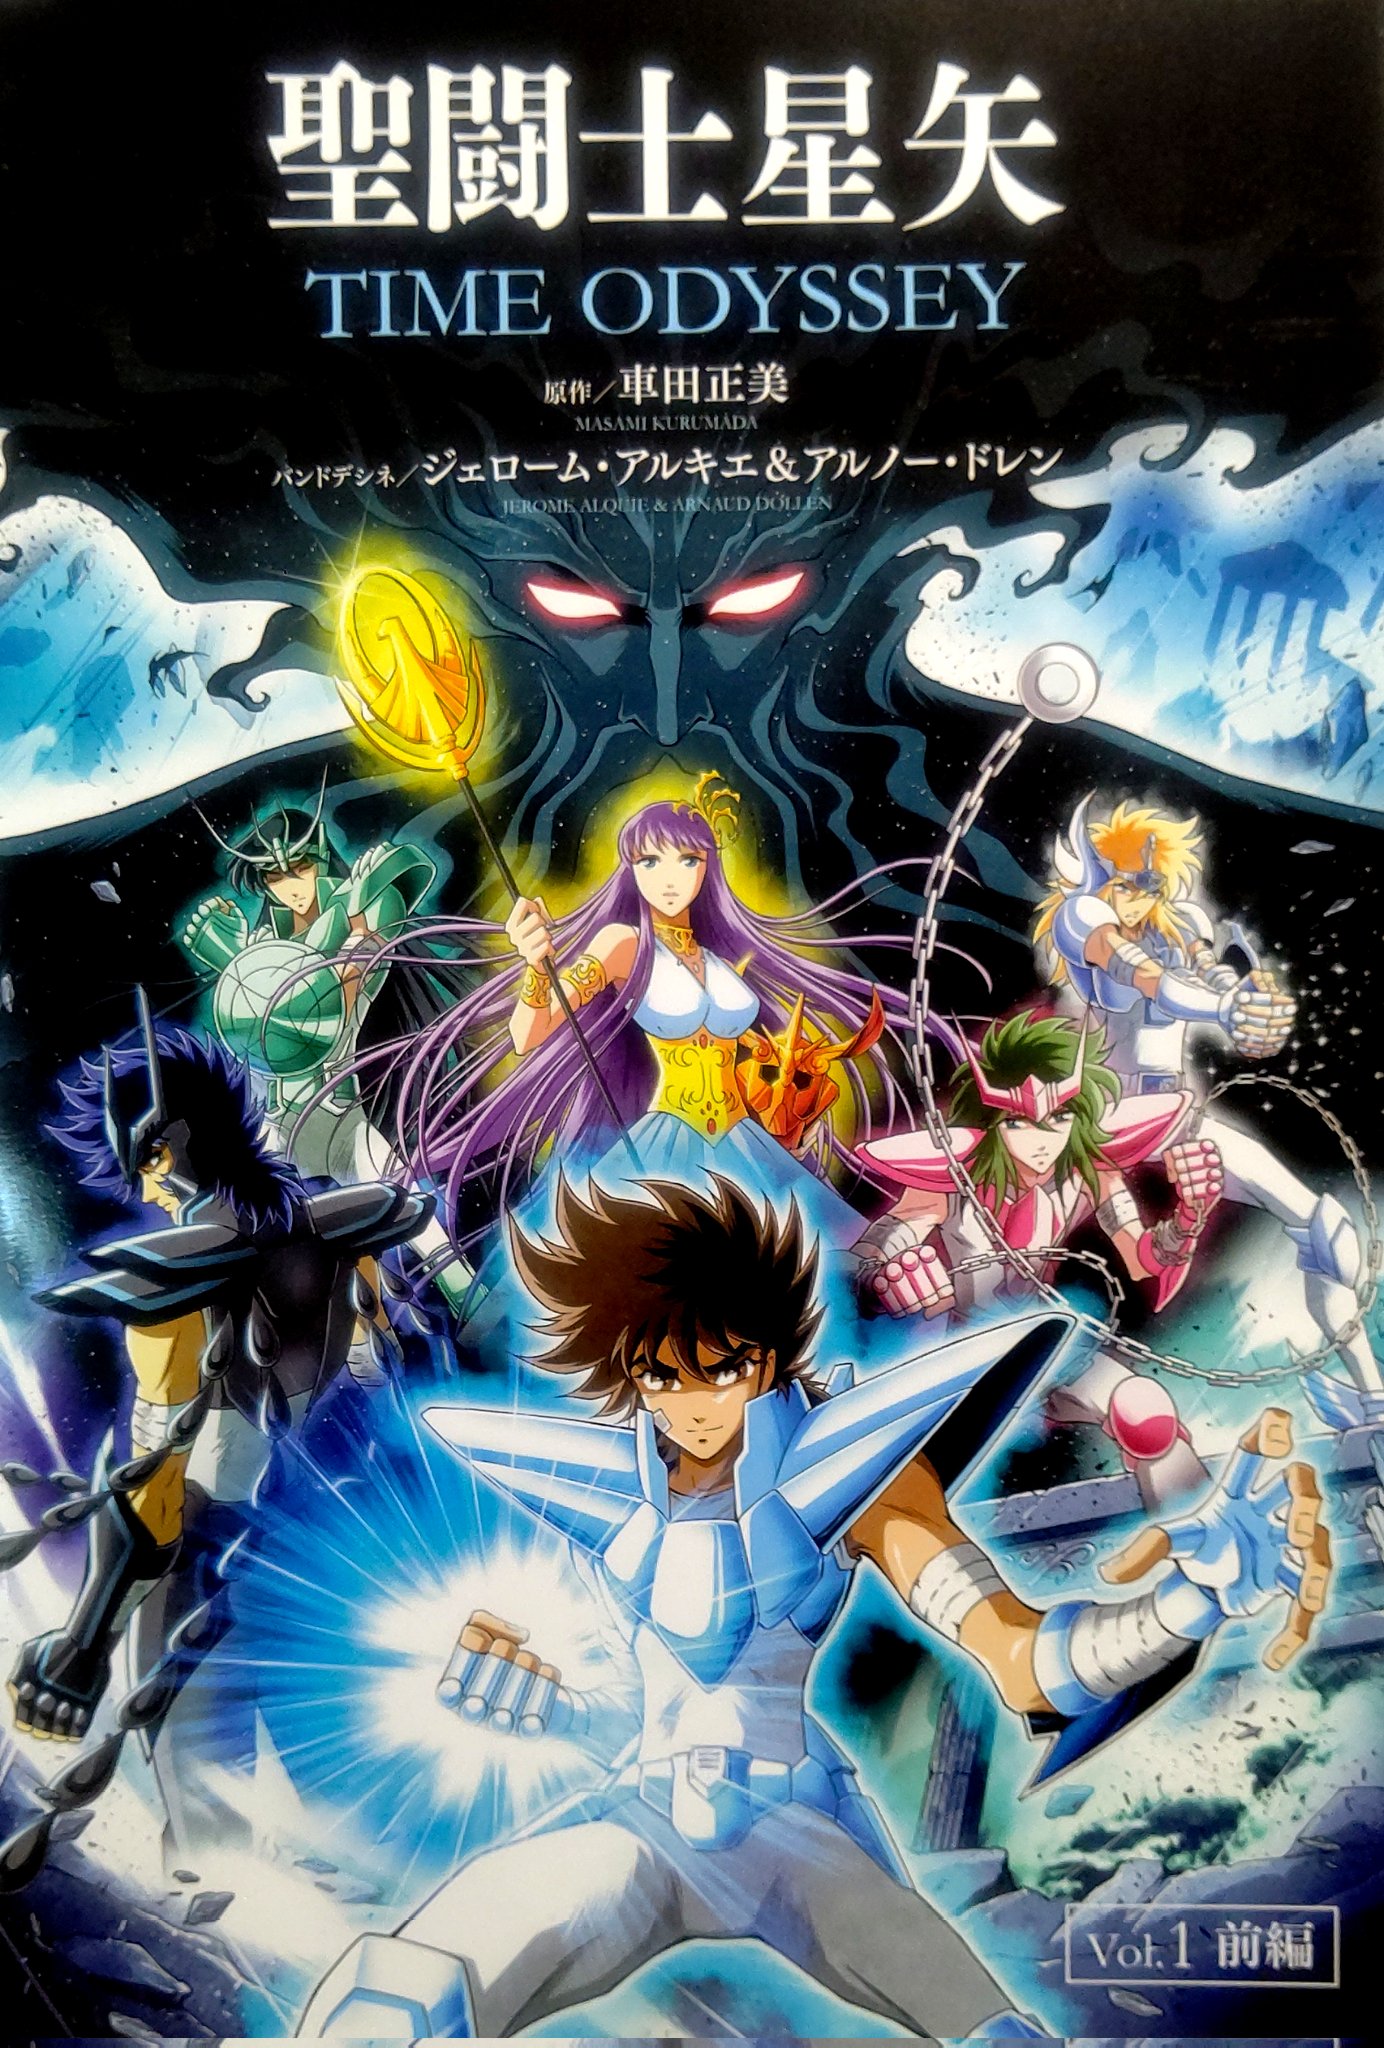 Cavaleiros do Zodíaco nos anos 2000 - Portal Genkidama